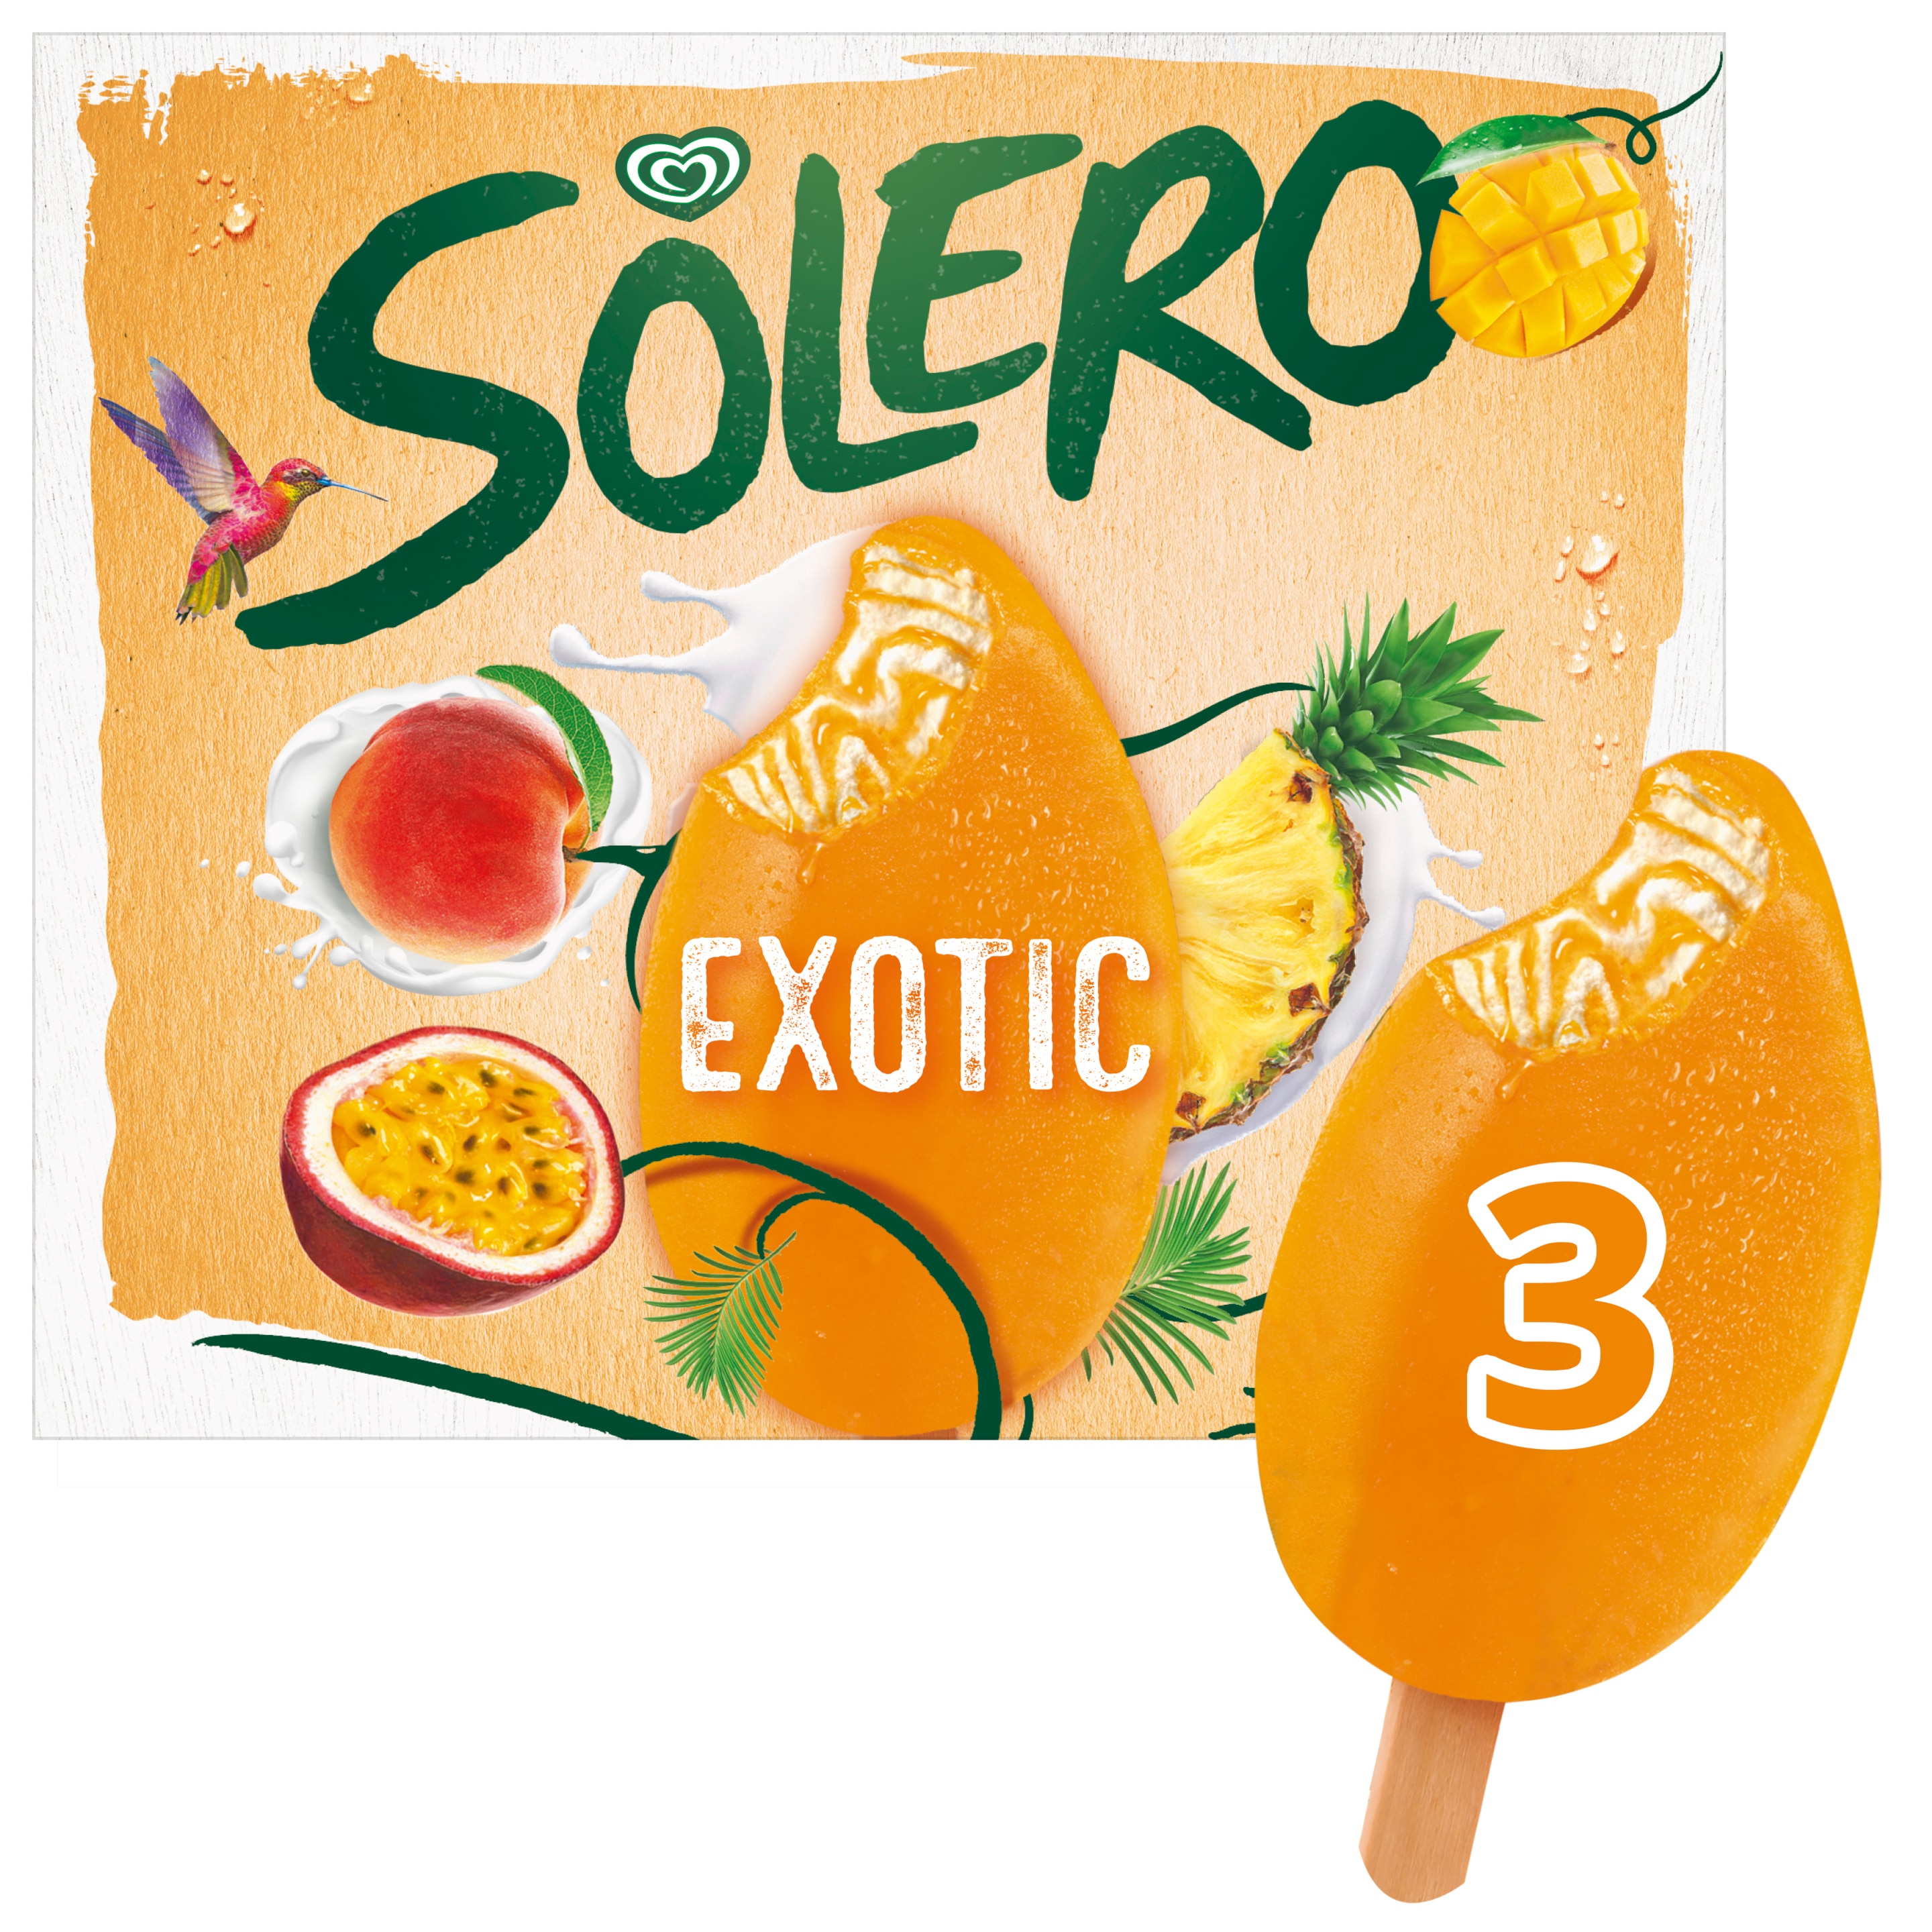 Solero Exotic 3 x 90 ml - Langnese Deutschland